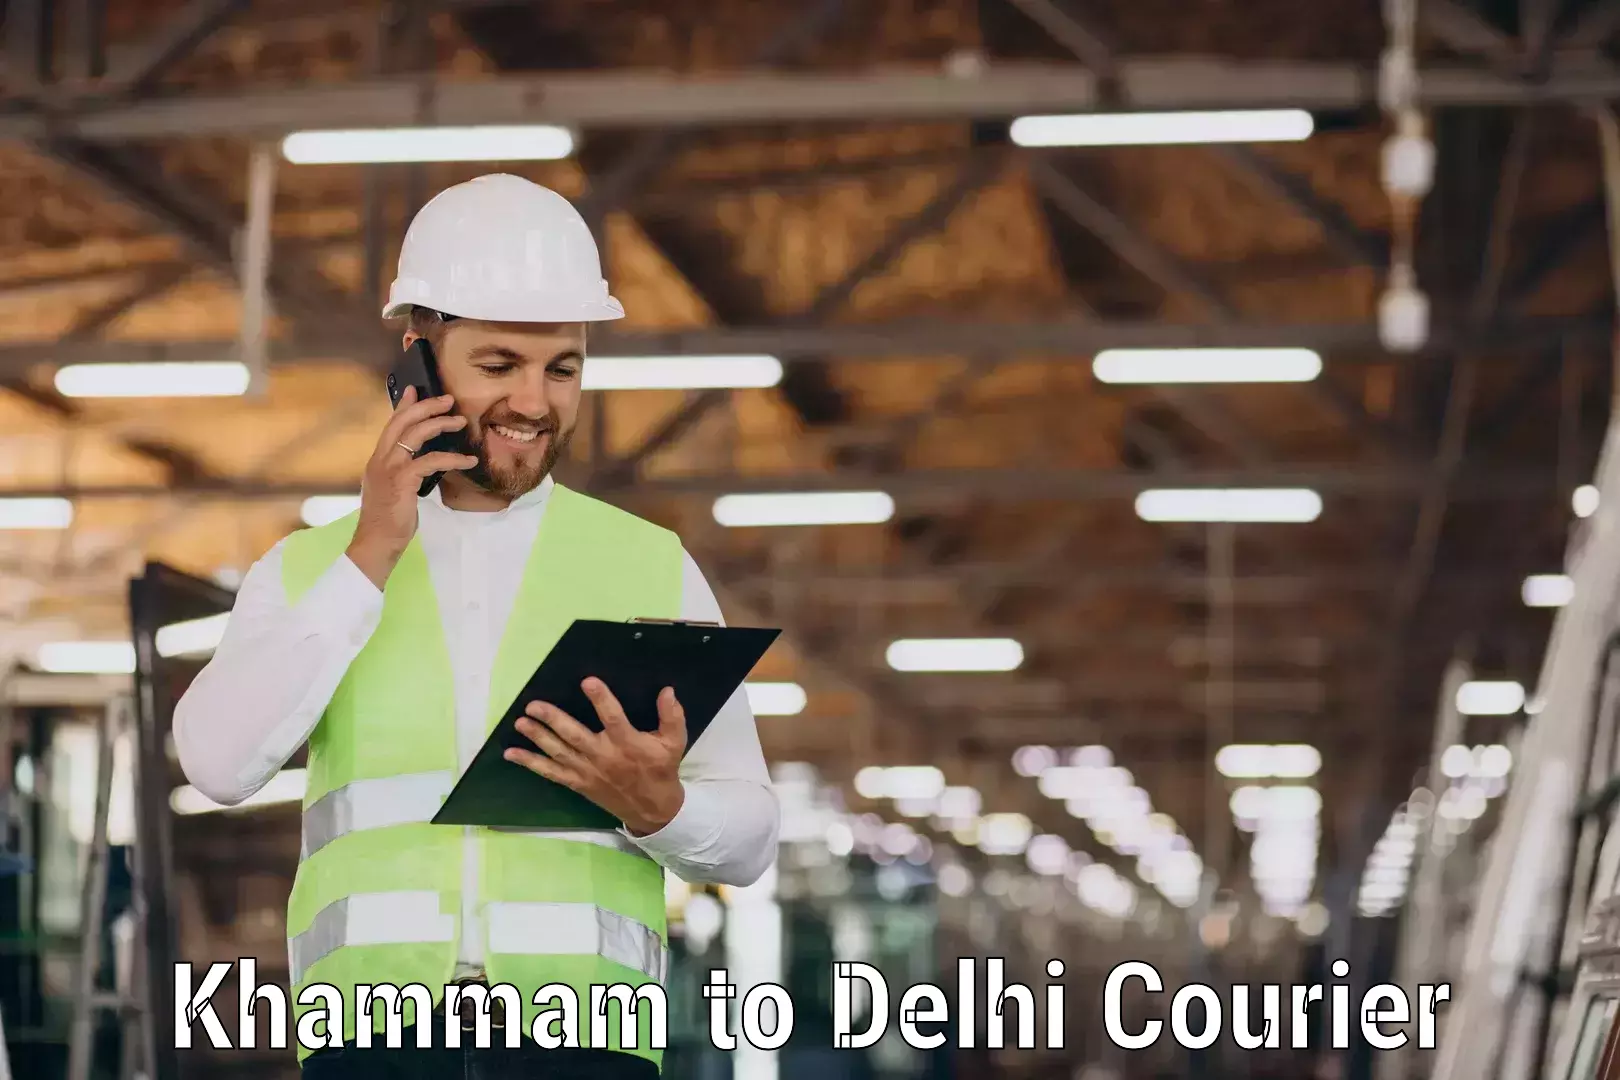 Next-day freight services Khammam to NIT Delhi